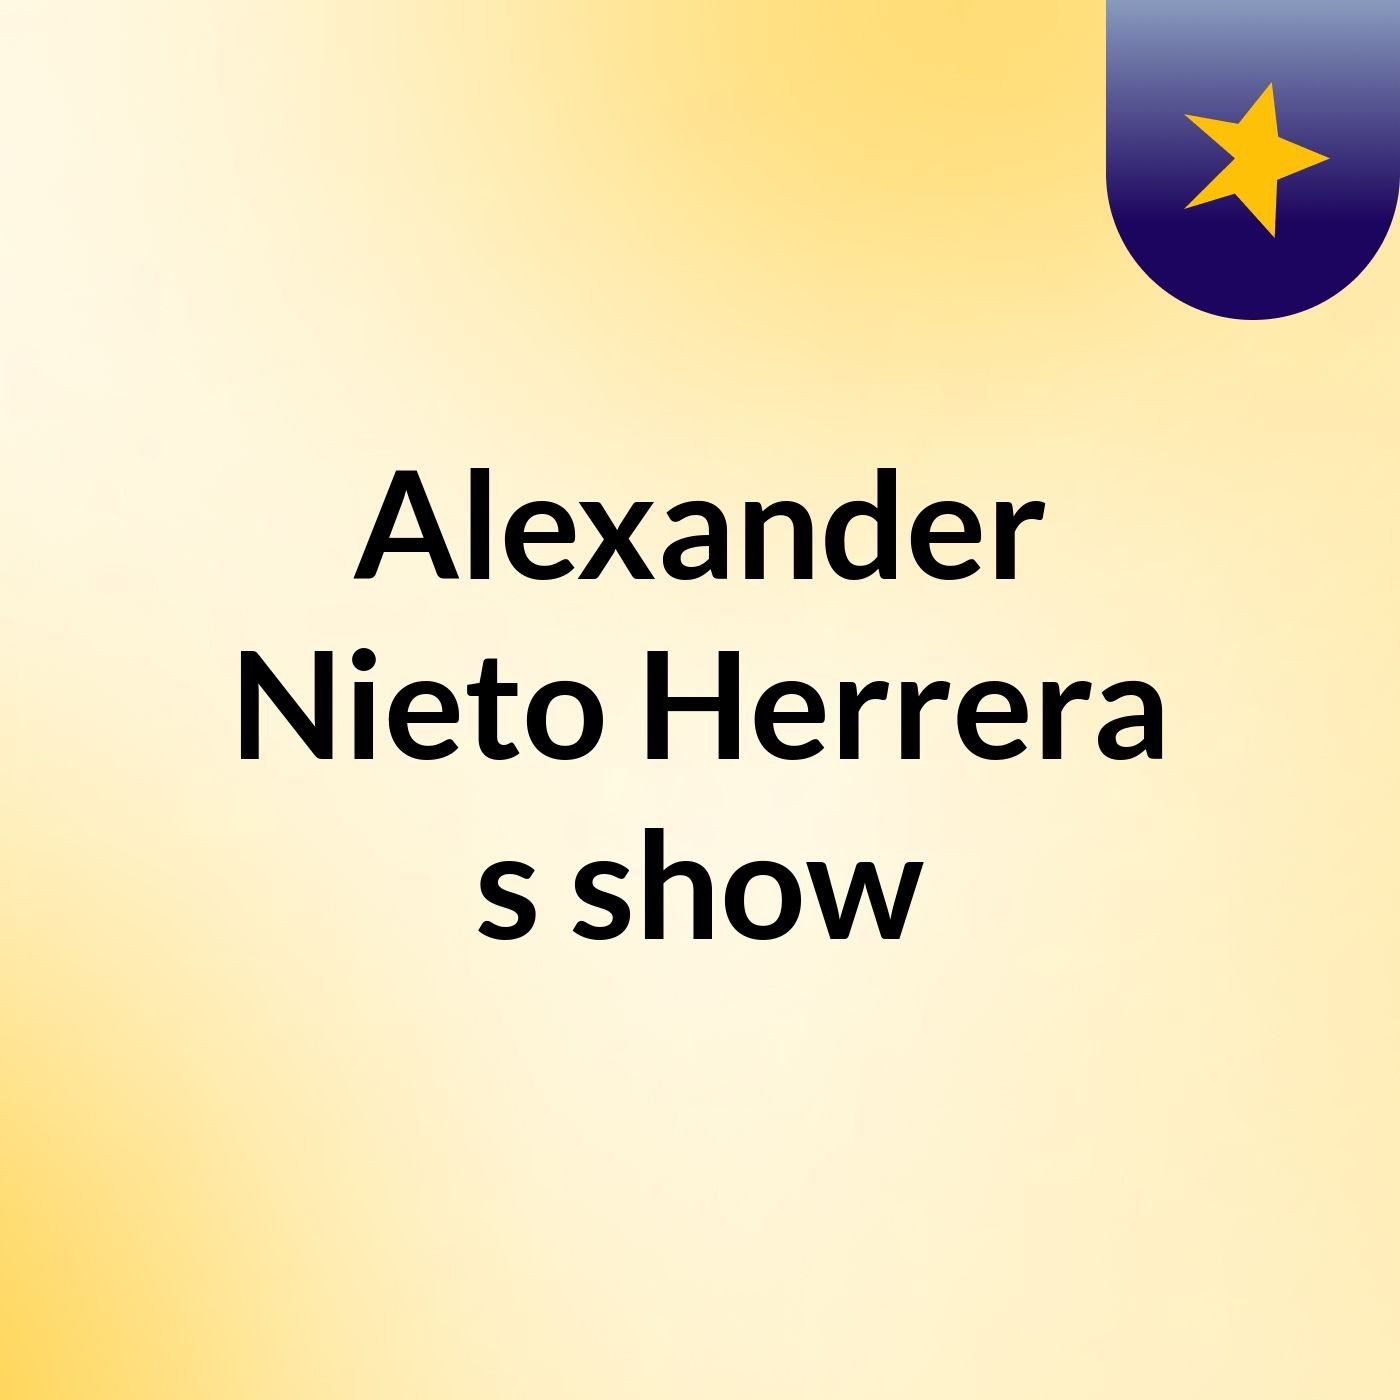 Alexander Nieto Herrera's show